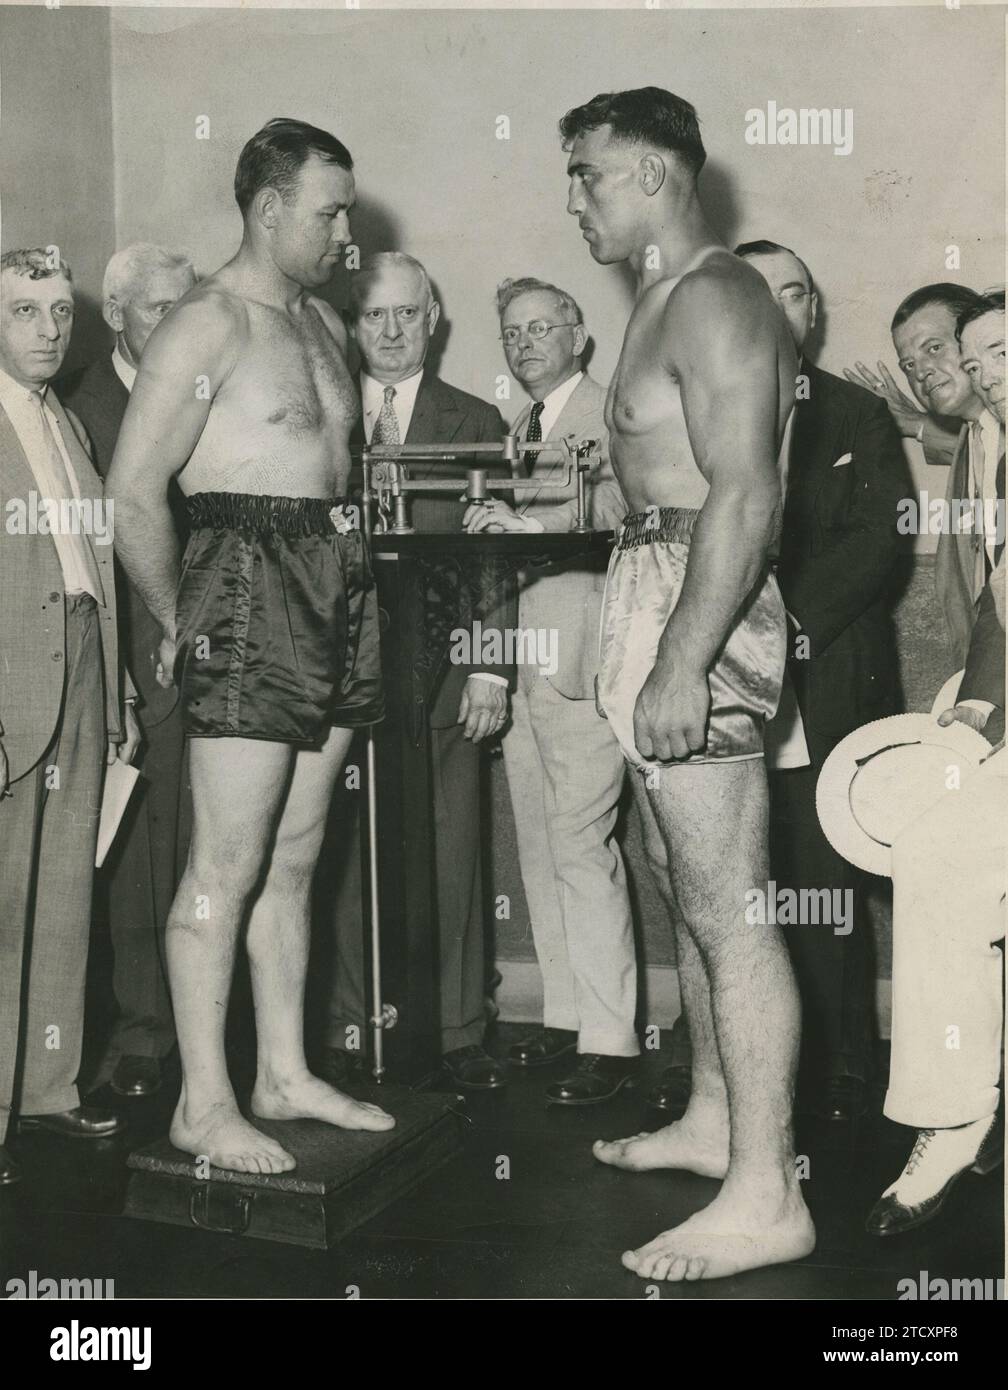 New York (États-Unis), 07/10/1933. Cousin Carnera contre Jack Sharkey. Dans l'image les deux boxeurs se pèsent dans les bureaux de la station de boxe New-yorkaise avant le combat. Crédit : Album / Archivo ABC / Vidal Banque D'Images